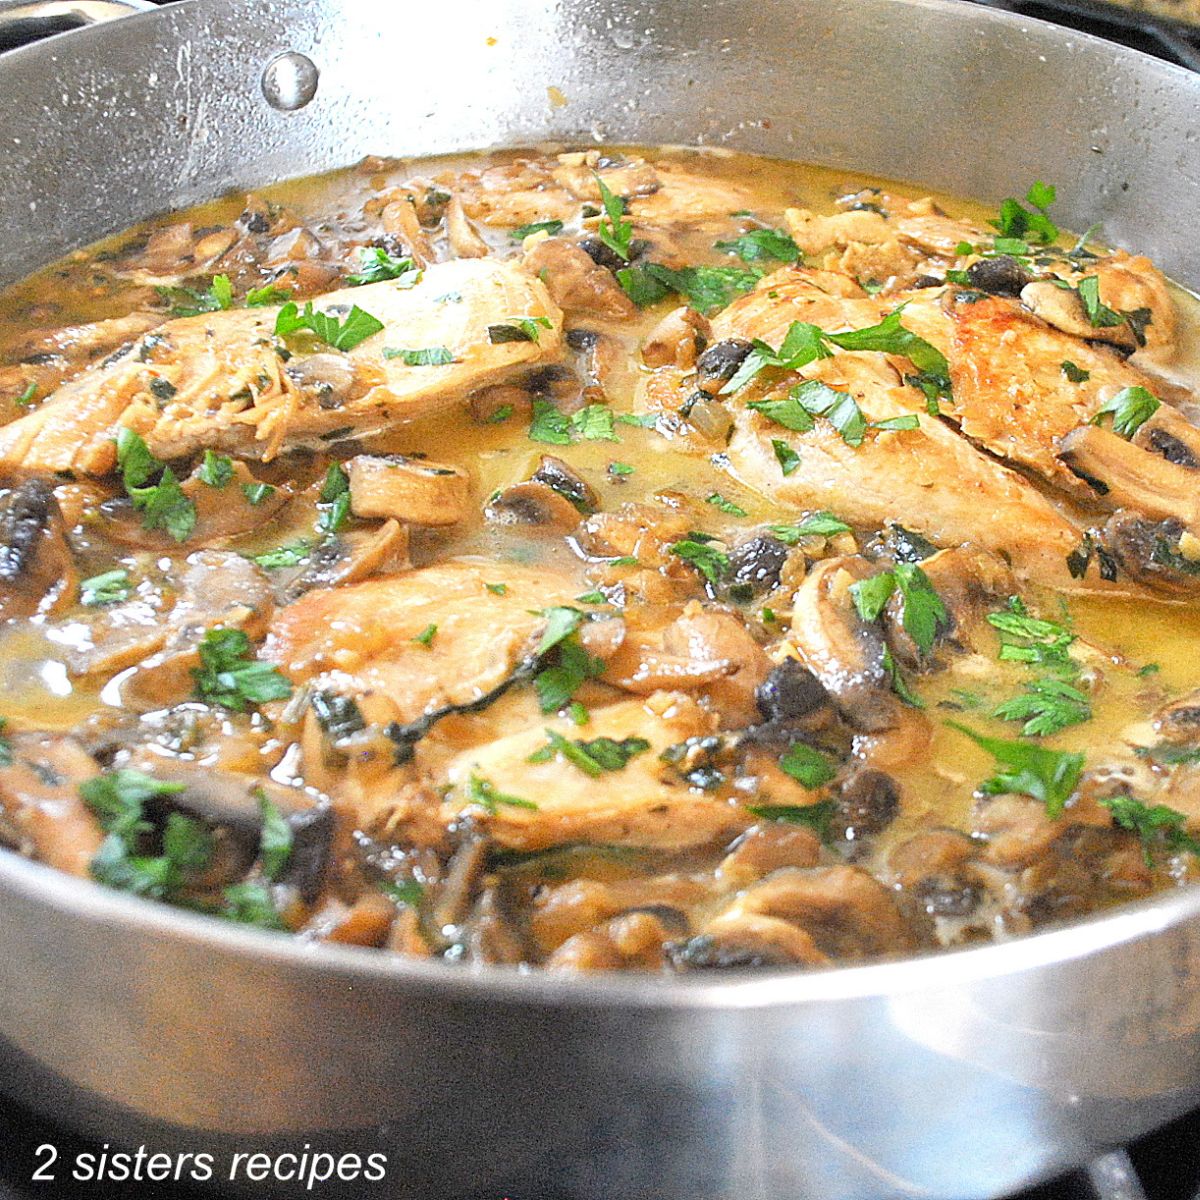 Skillet Chicken Mushroom Dinner by 2sistersrecipes.com